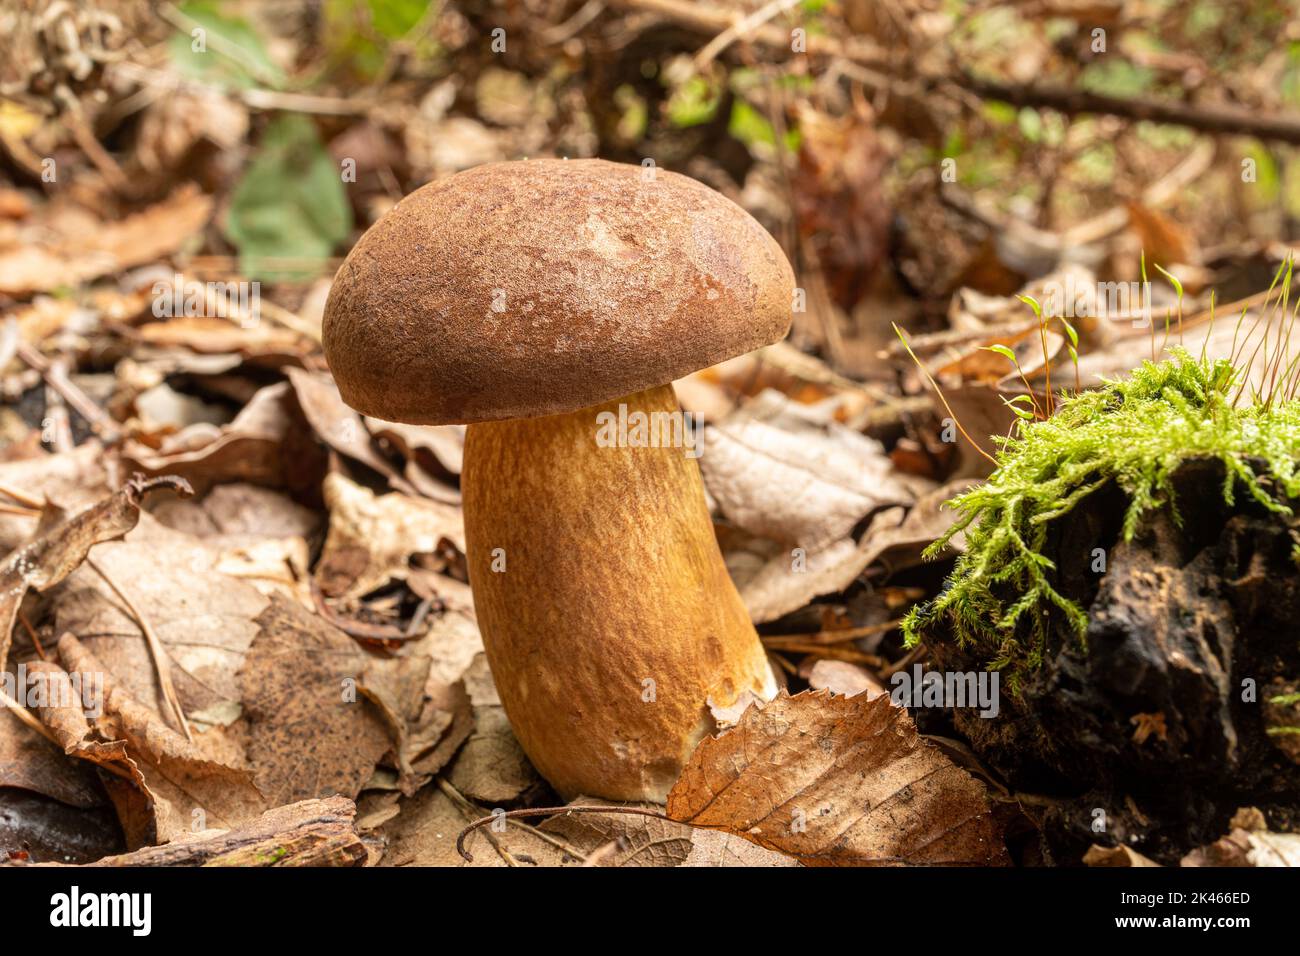 Champignon Boletus toadbucket, champignon velouté de la calotte brune avec des pores qui poussent sur le sol des bois pendant l'automne, Hampshire, Angleterre, Royaume-Uni Banque D'Images